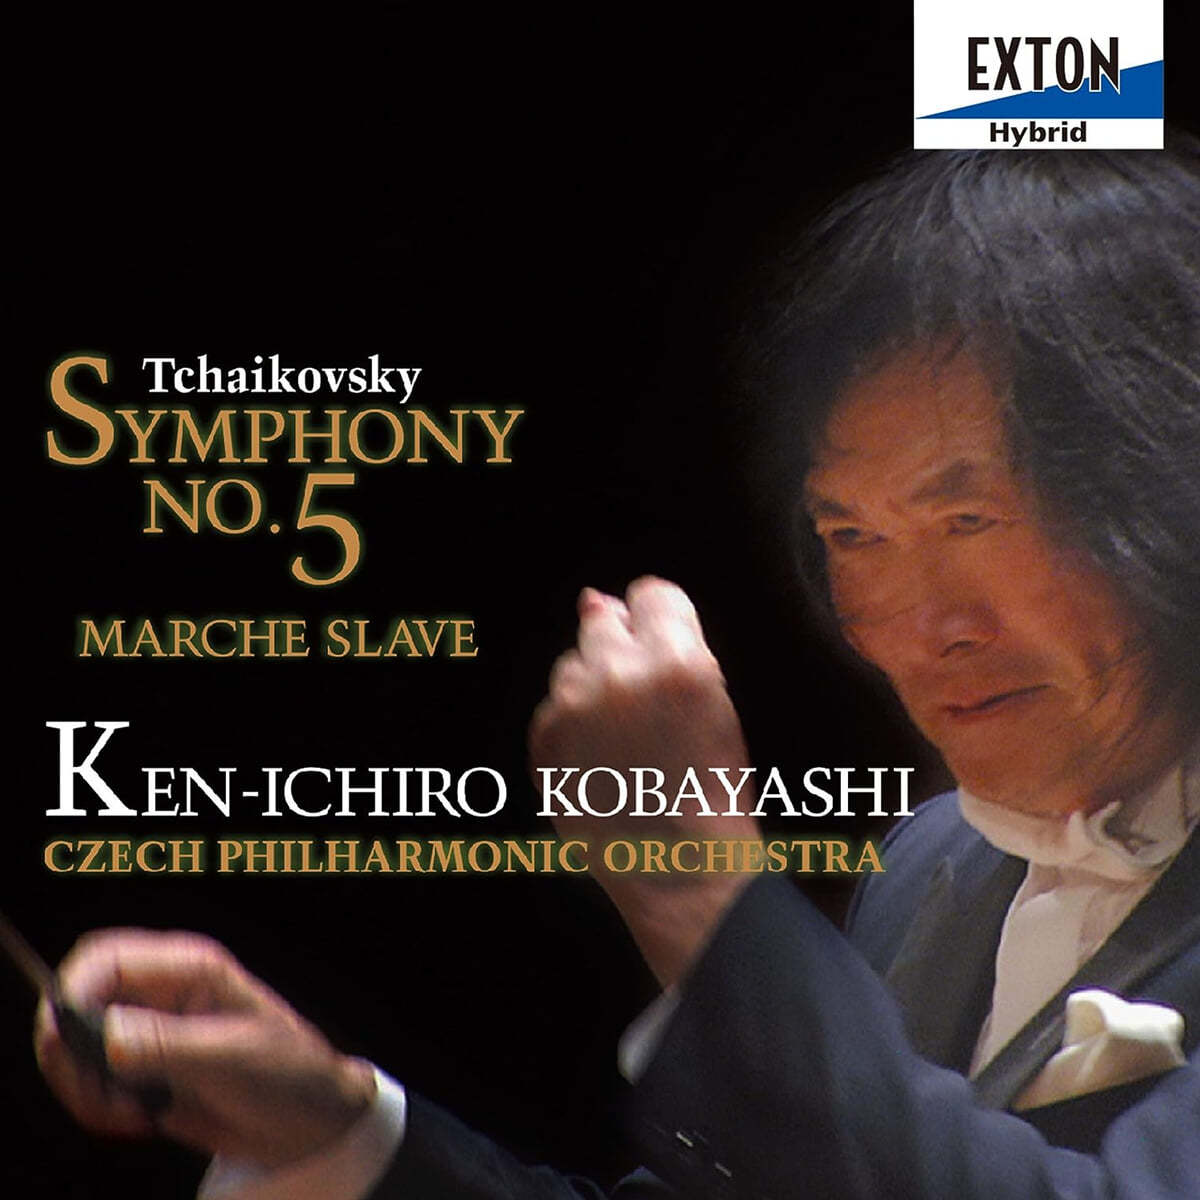 Ken-Ichiro Kobayashi 차이코프스키: 교향곡 5번, 슬라브 행진곡 (Tchaikovsky: Symphony No. 5, Marche Slave)